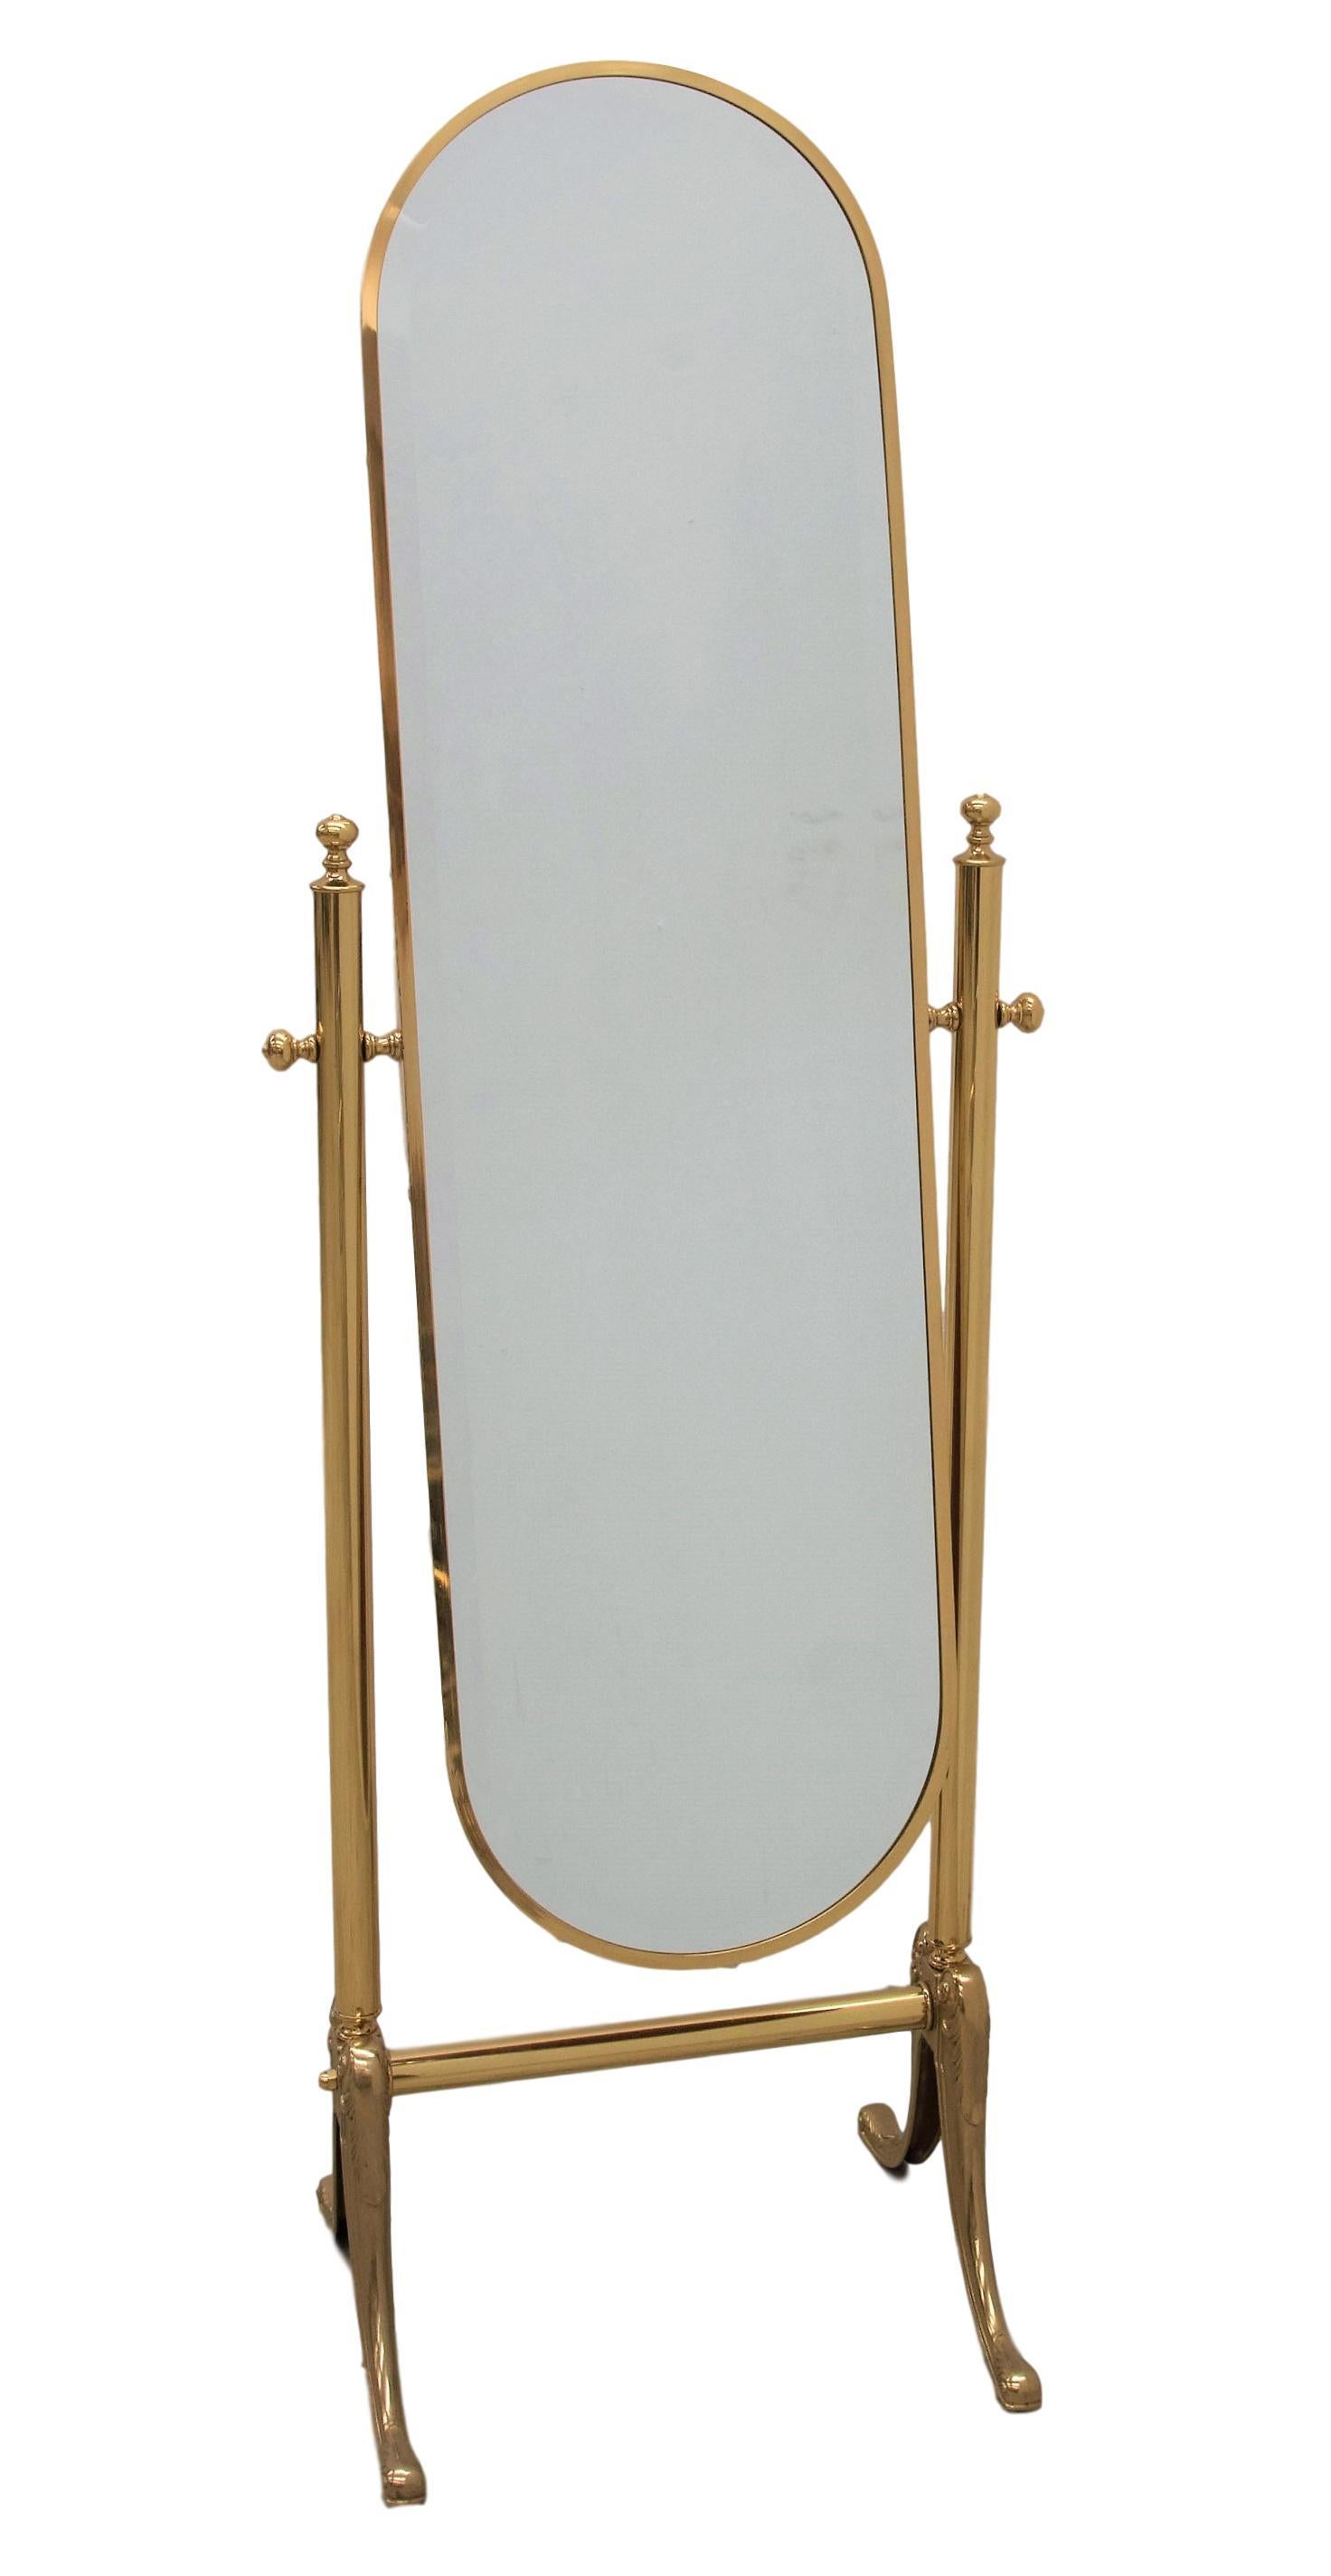 Schöner bodenlanger Chevalspiegel aus Messing, hergestellt in den 1980er Jahren in Italien. Der Spiegel kann in den gewünschten Winkel gedreht werden. Der Zustand ist ausgezeichnet, mit sehr geringer Verblassung und Patina.

Ein großartiges Stück,